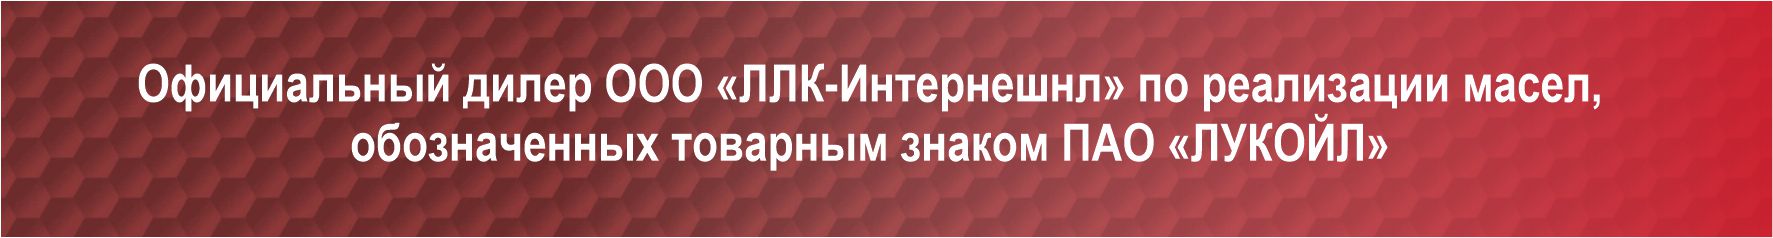 Официальный дилер по реализации смазочных материалов "Лукойл"